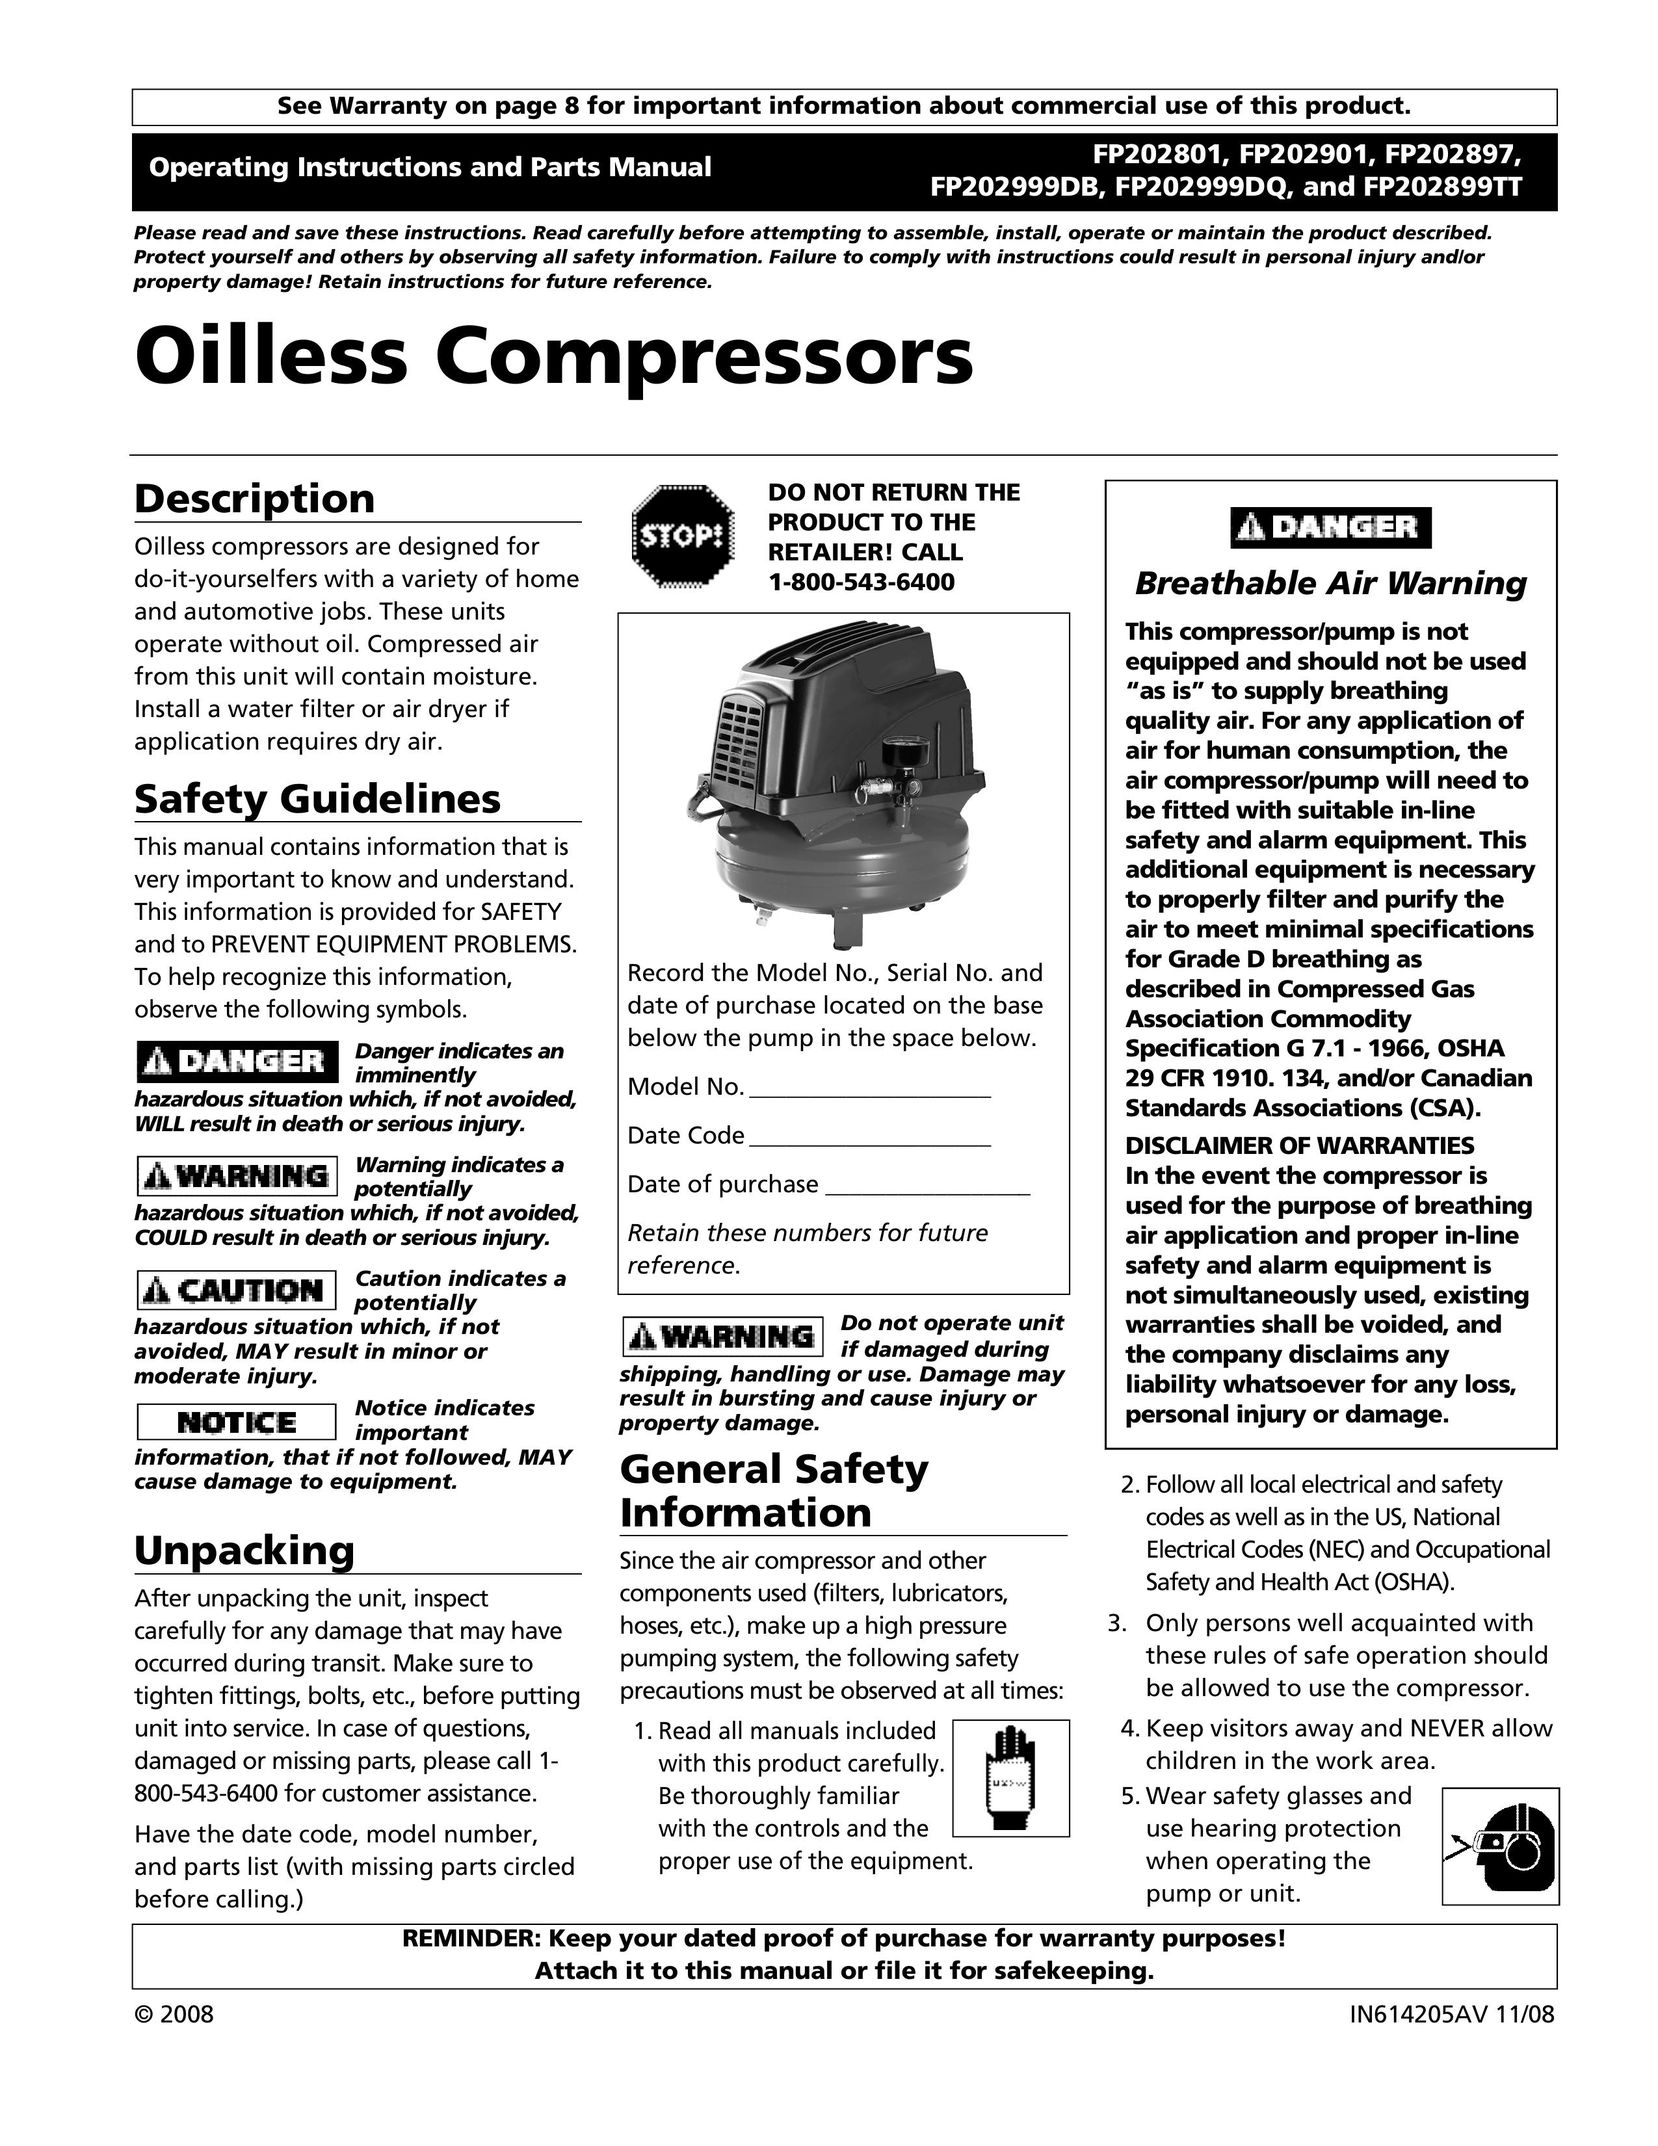 Campbell Hausfeld FP202897 Air Compressor User Manual